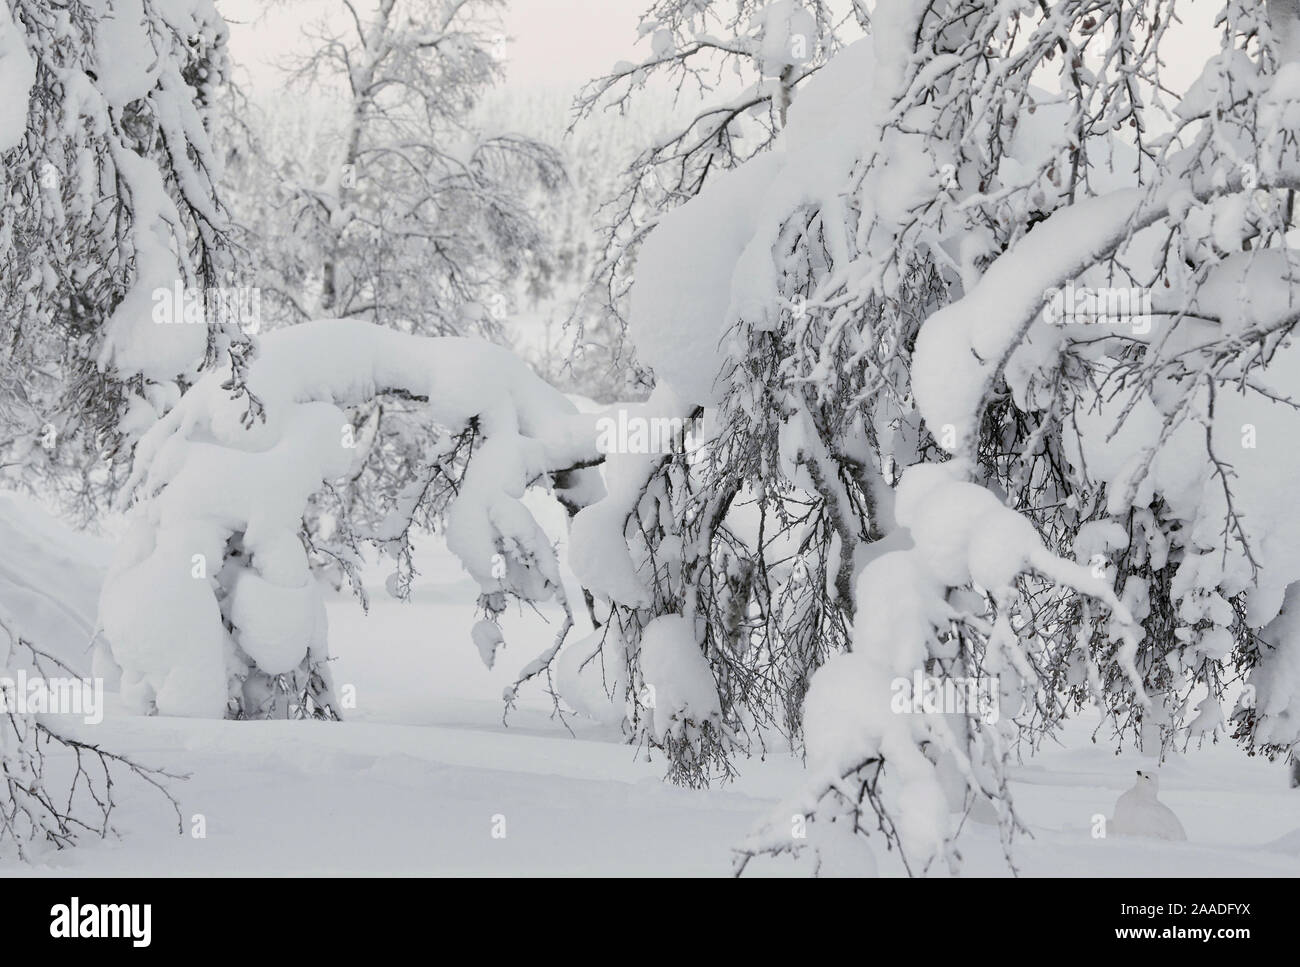 Willow Grouse (Lagopus lagopus) extrem gut unter Schnee beladenen Baum getarnt, Inari Kiilopaa Finnland Januar hoch in der Kategorie der Asferico Fotografie Wettbewerb 2017 ausgezeichnet. Stockfoto